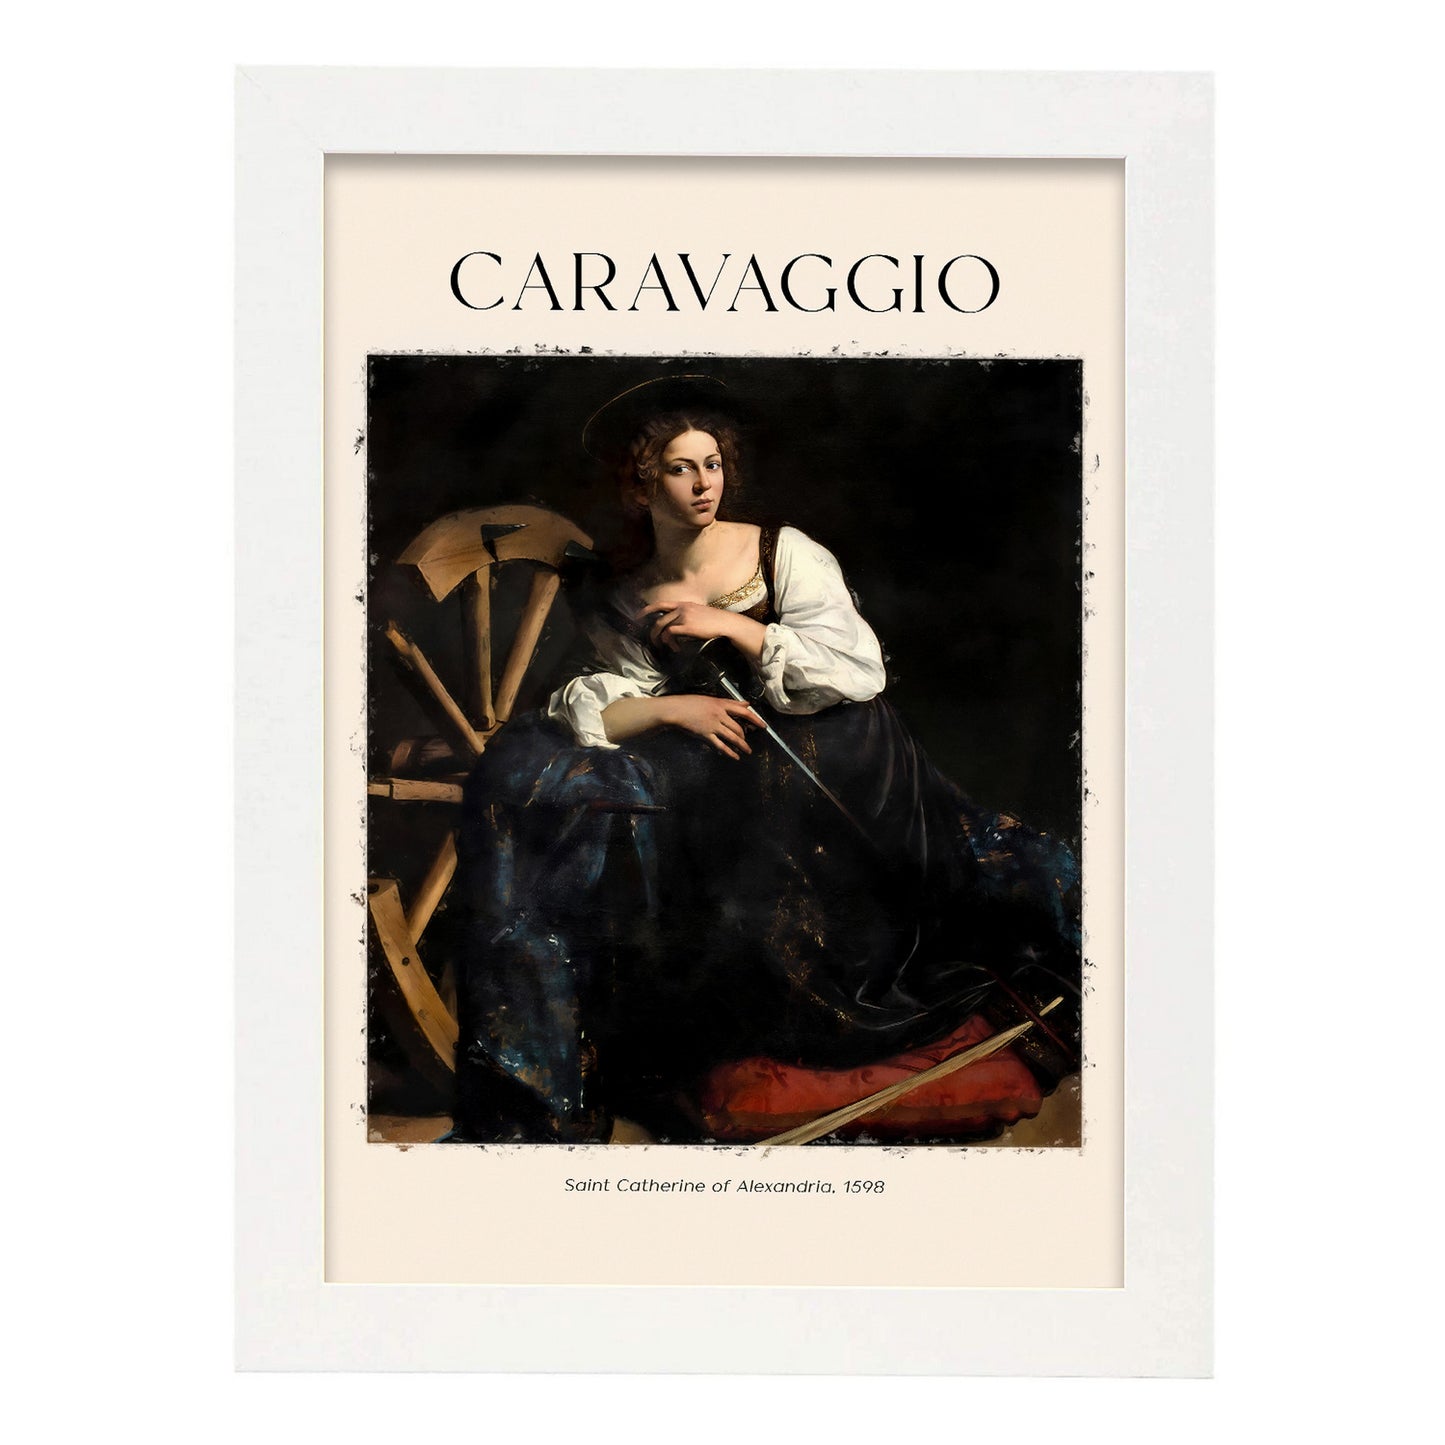 Lámina de Santa Catherine de Alejandría inspirada en Caravaggio